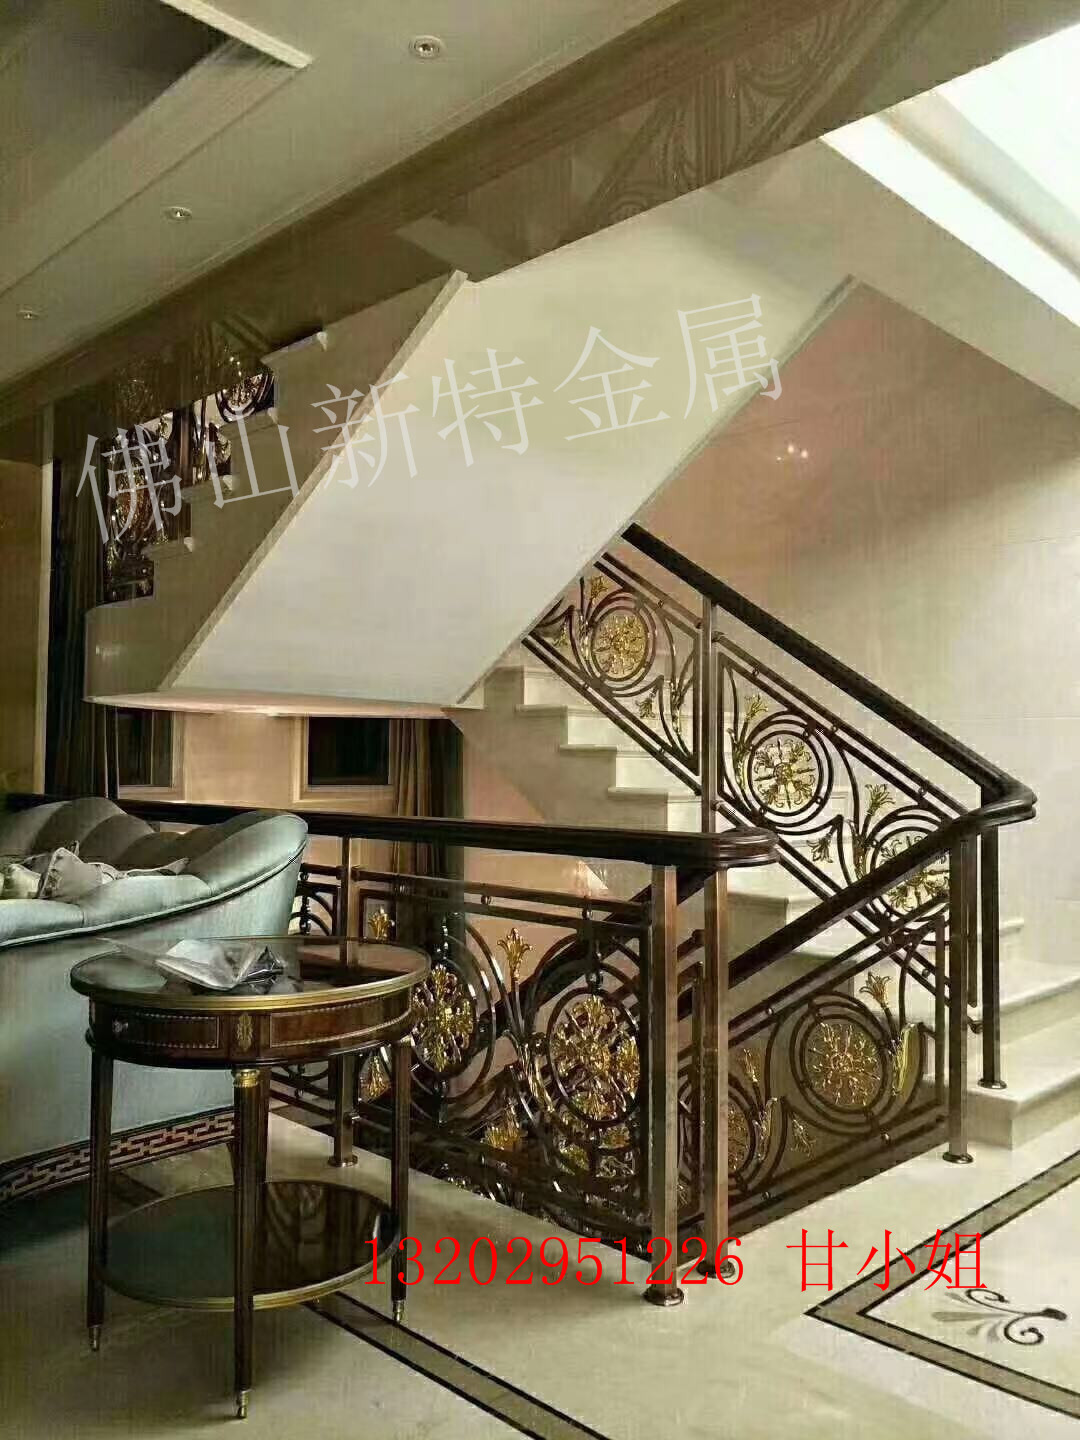 微旋弧形楼梯 高档别墅镀金铝艺楼梯护栏系列款图片